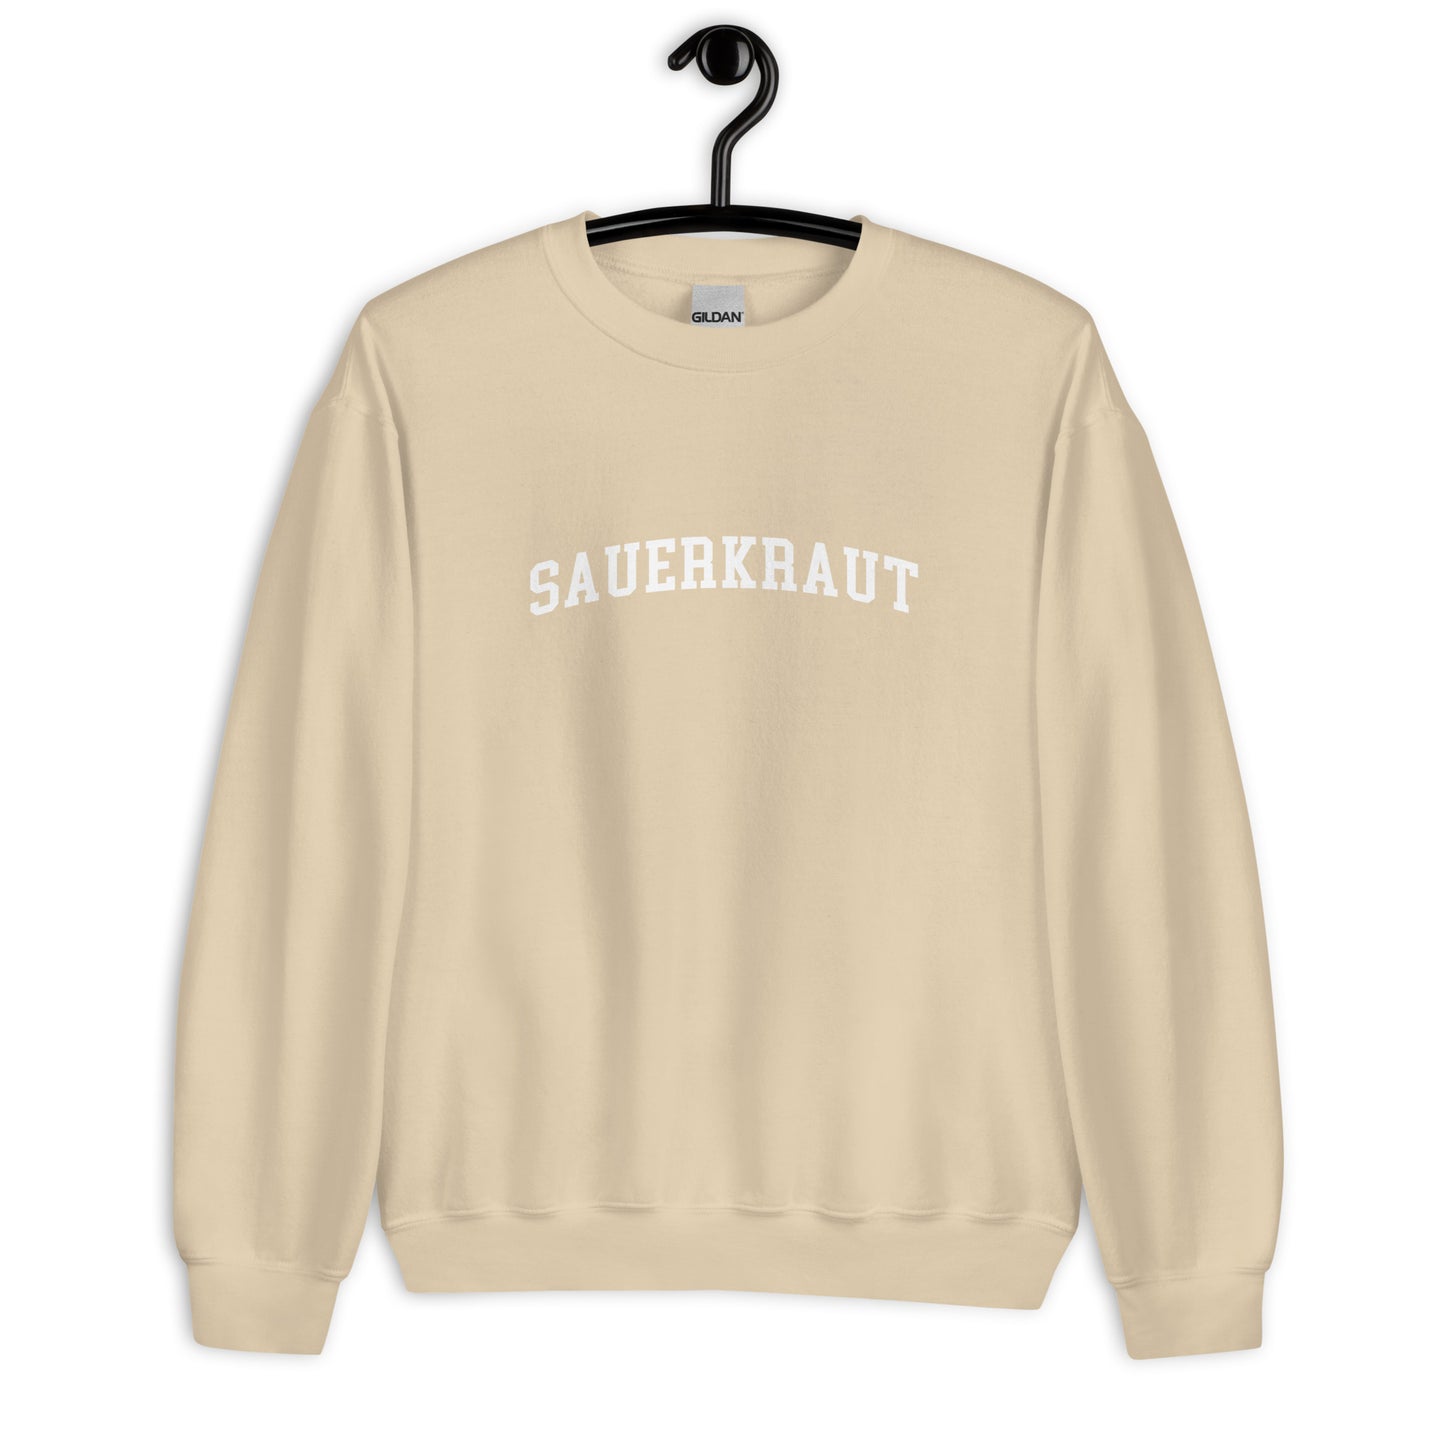 Sauerkraut Sweatshirt - Arched Font